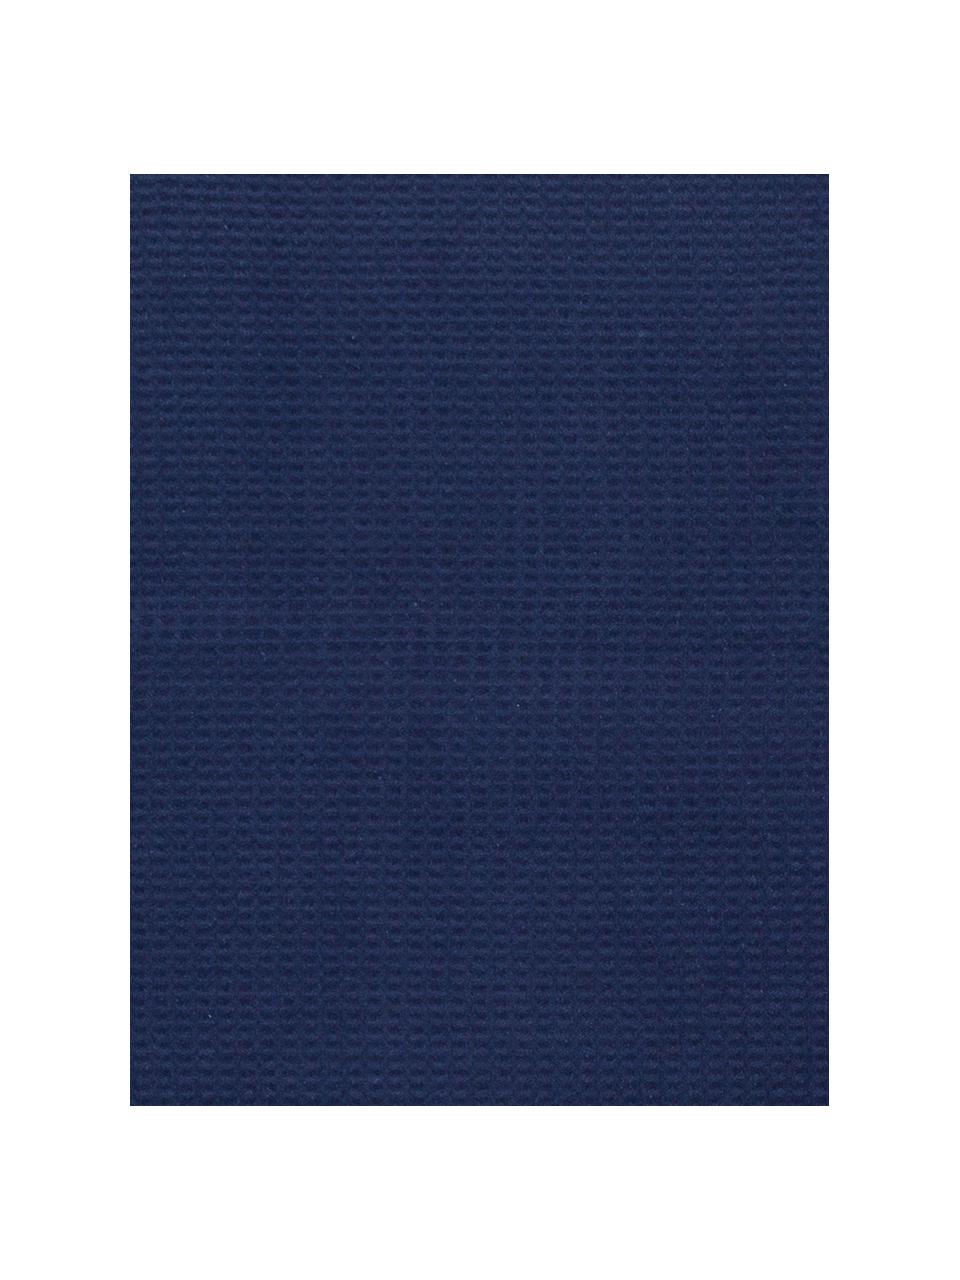 Manta con estructura gofre Sara, 50% algodón, 50% acrílico, Azul oscuro, An 140 x L 180 cm